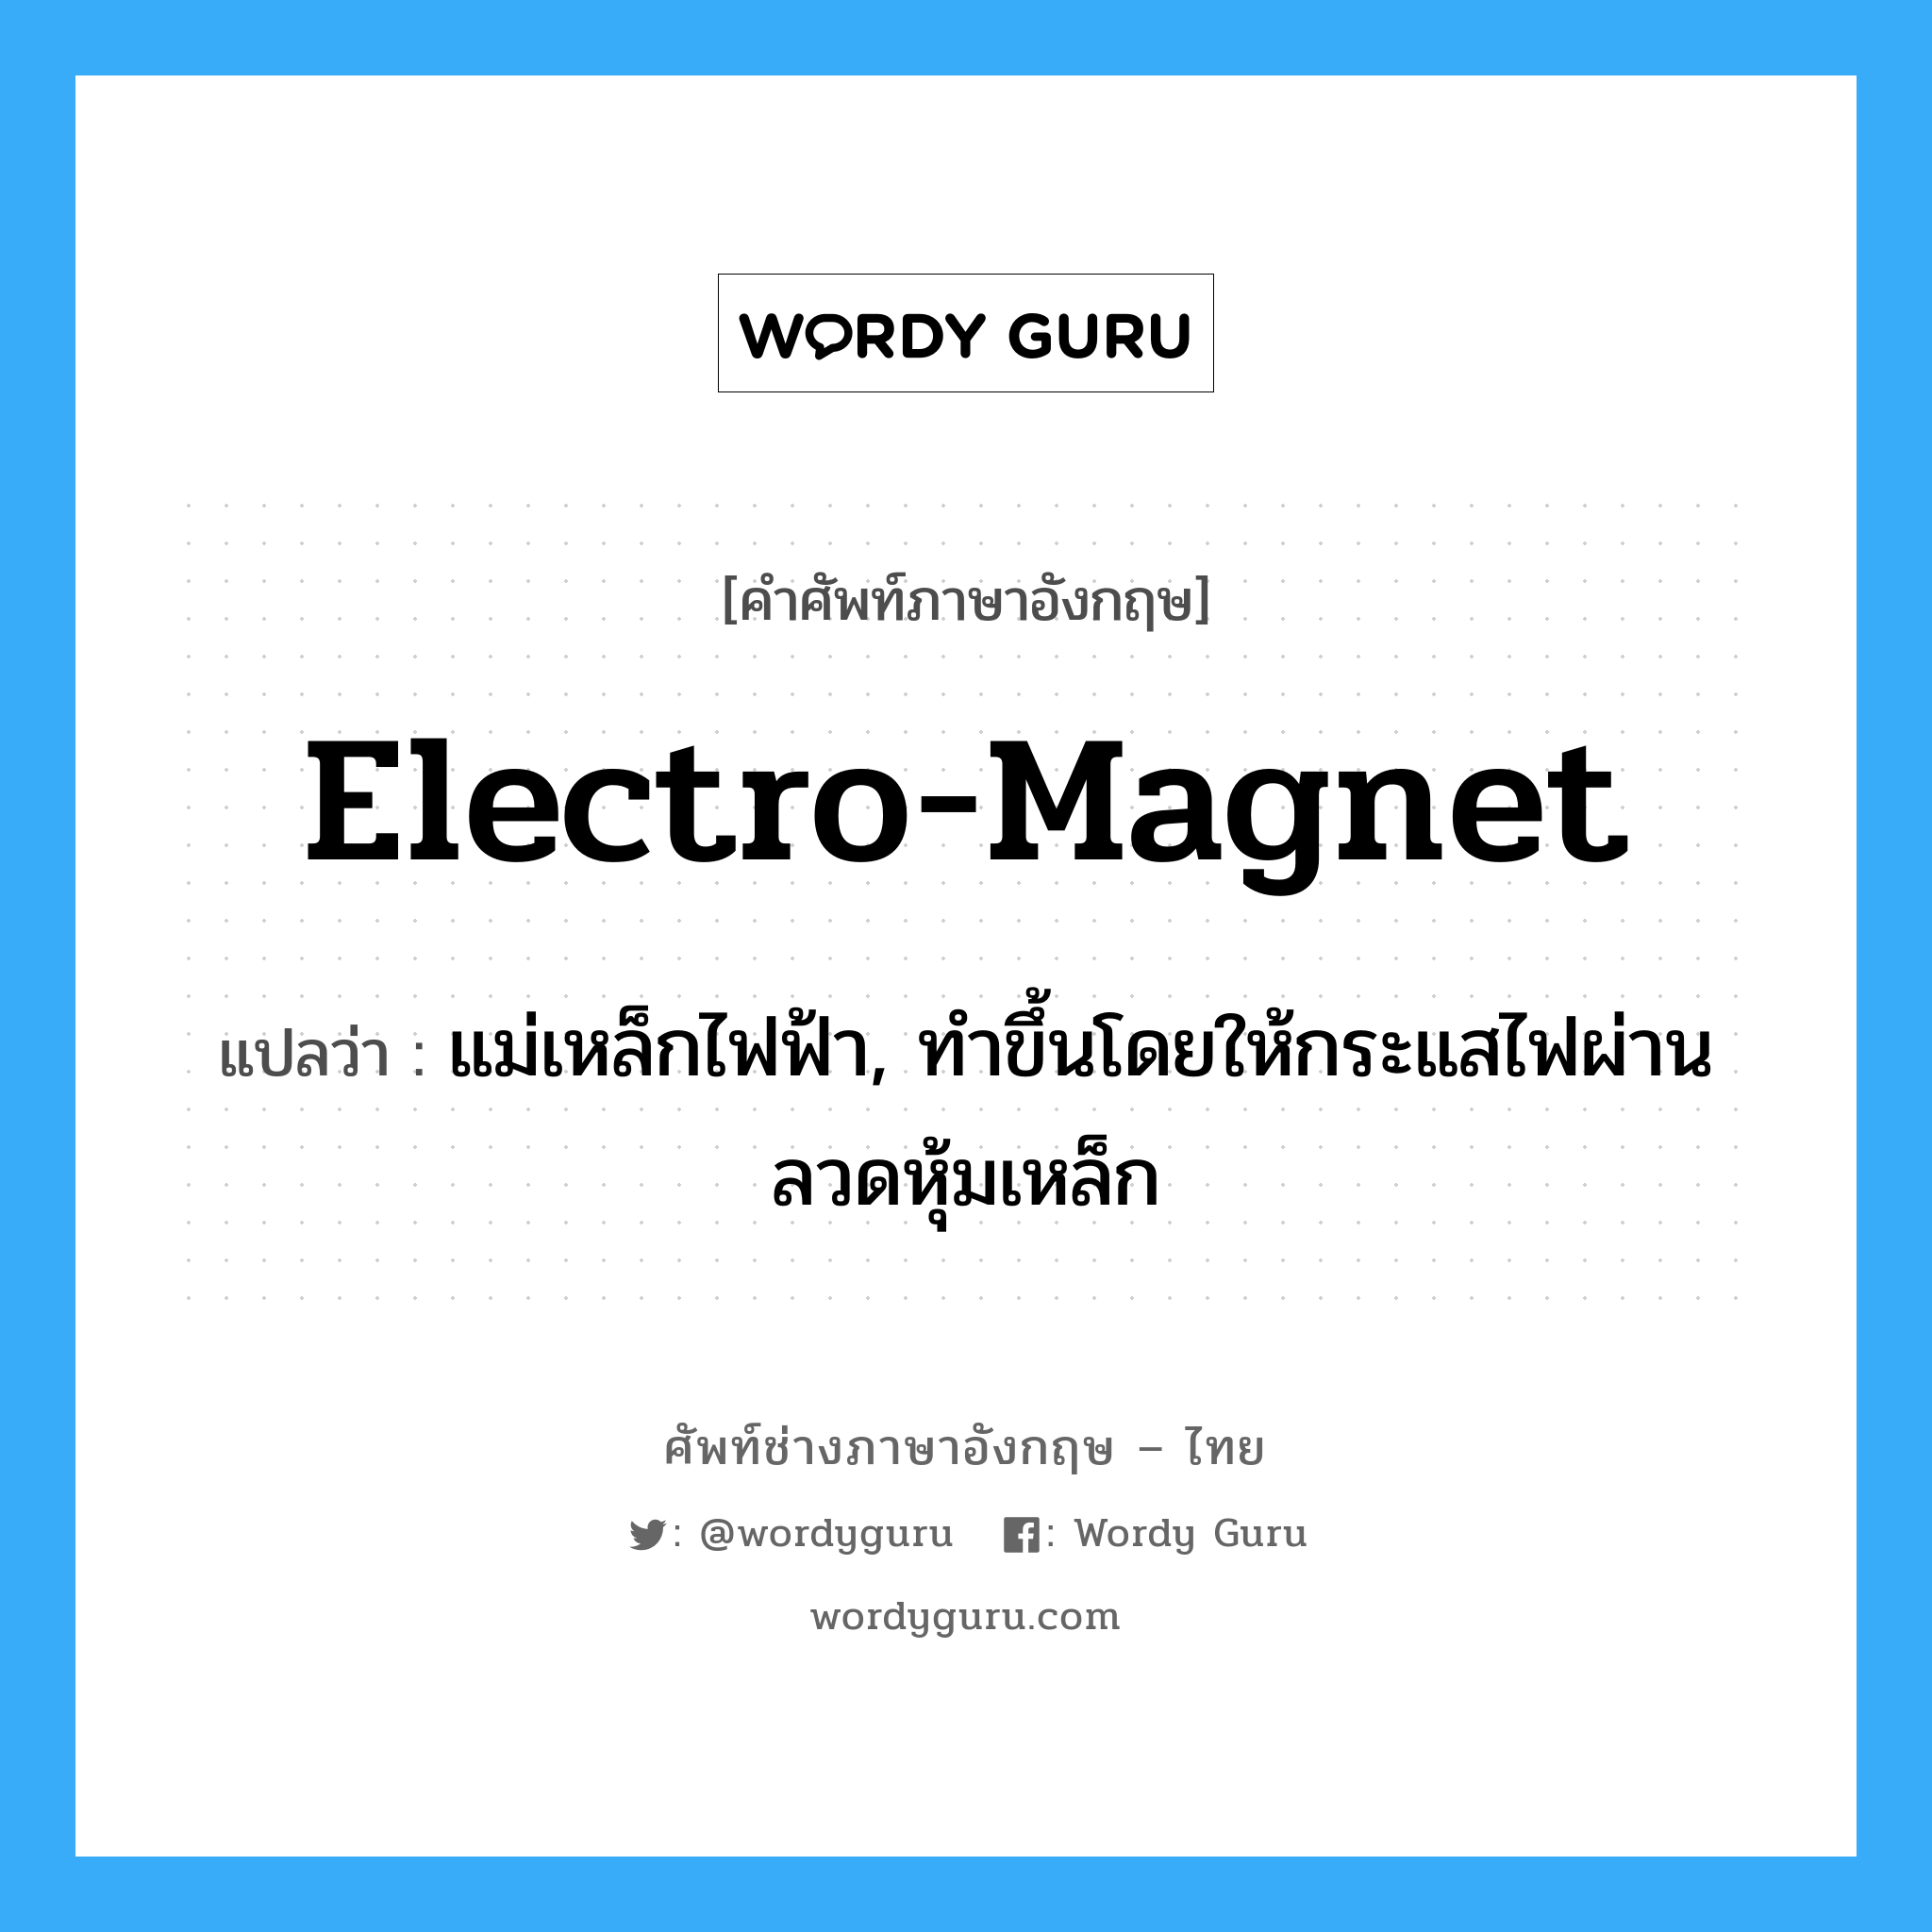 electro-magnet แปลว่า?, คำศัพท์ช่างภาษาอังกฤษ - ไทย electro-magnet คำศัพท์ภาษาอังกฤษ electro-magnet แปลว่า แม่เหล็กไฟฟ้า, ทำขึ้นโดยให้กระแสไฟผ่านลวดหุ้มเหล็ก